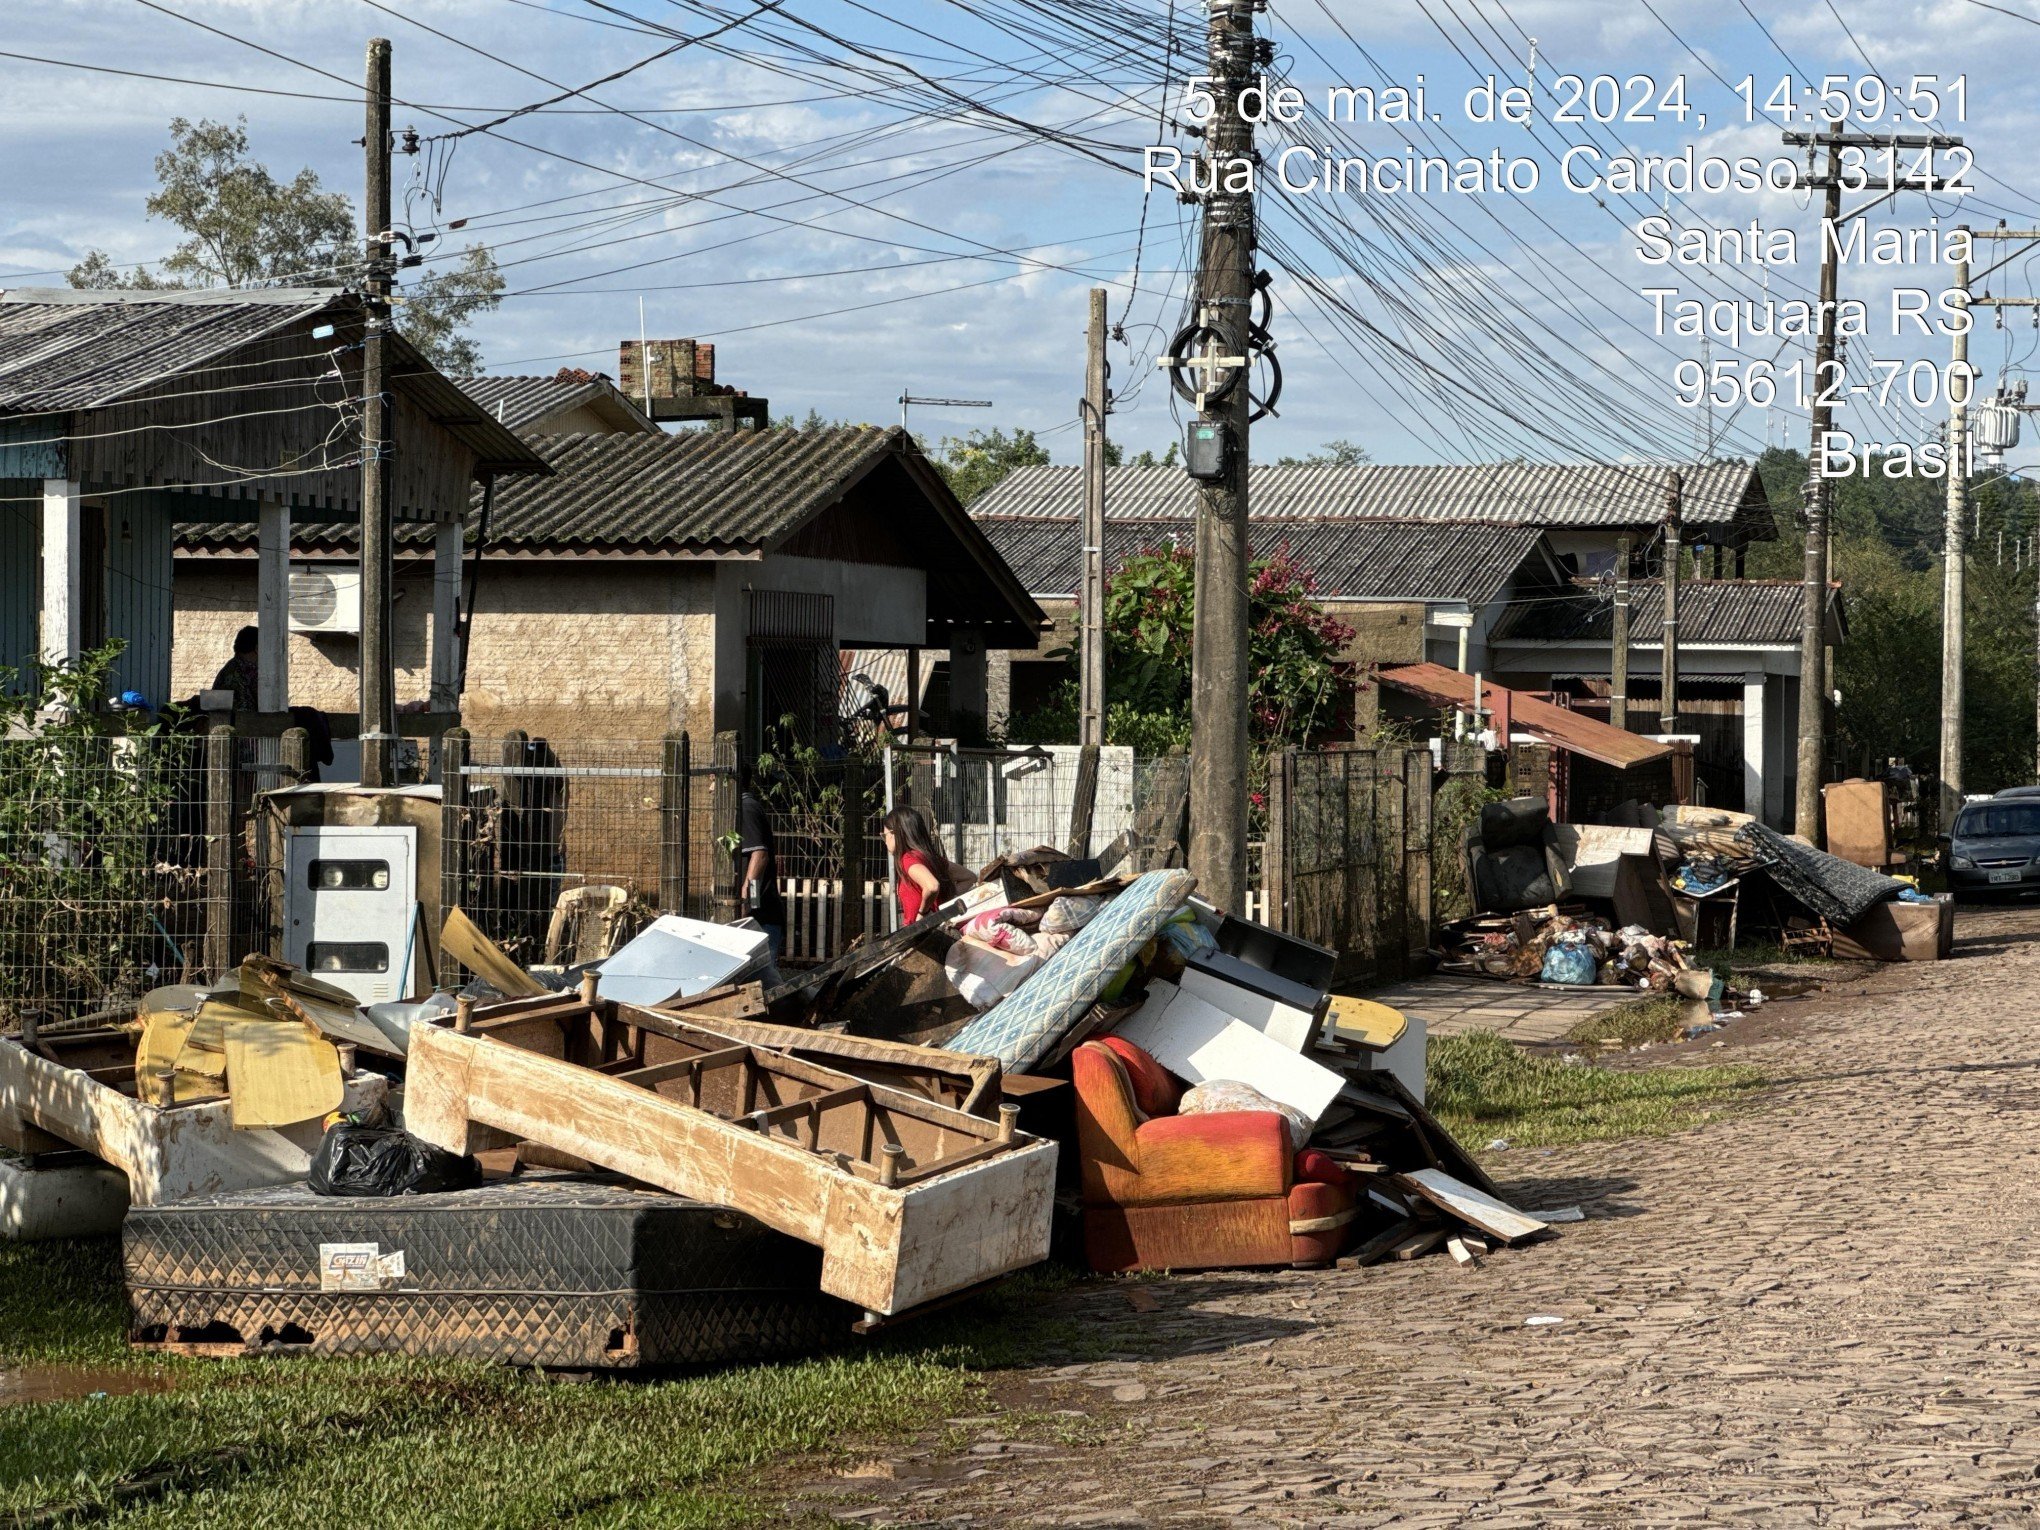 CATÁSTROFE RS: Dois depósitos temporários recebem resíduos deixados em frente das casas